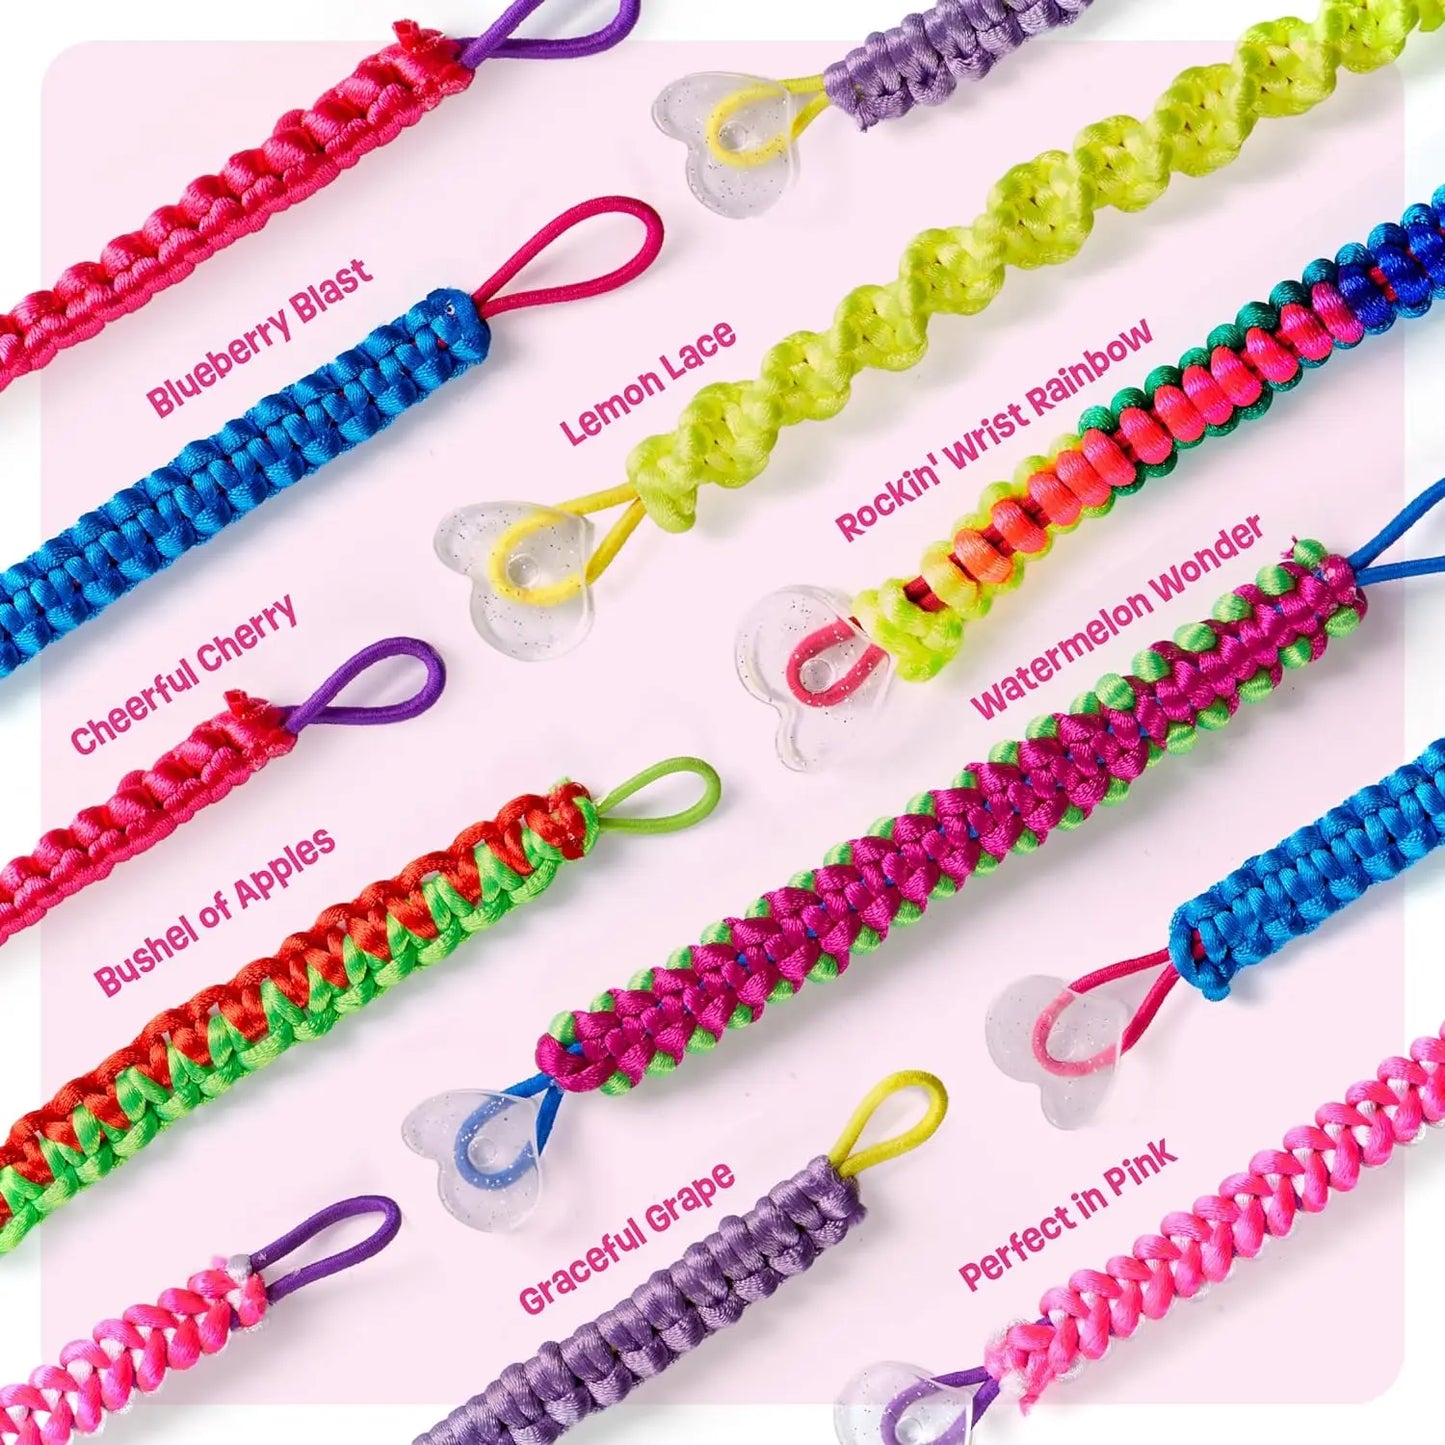 Friendship Bracelet Kit for Girls PillowNap